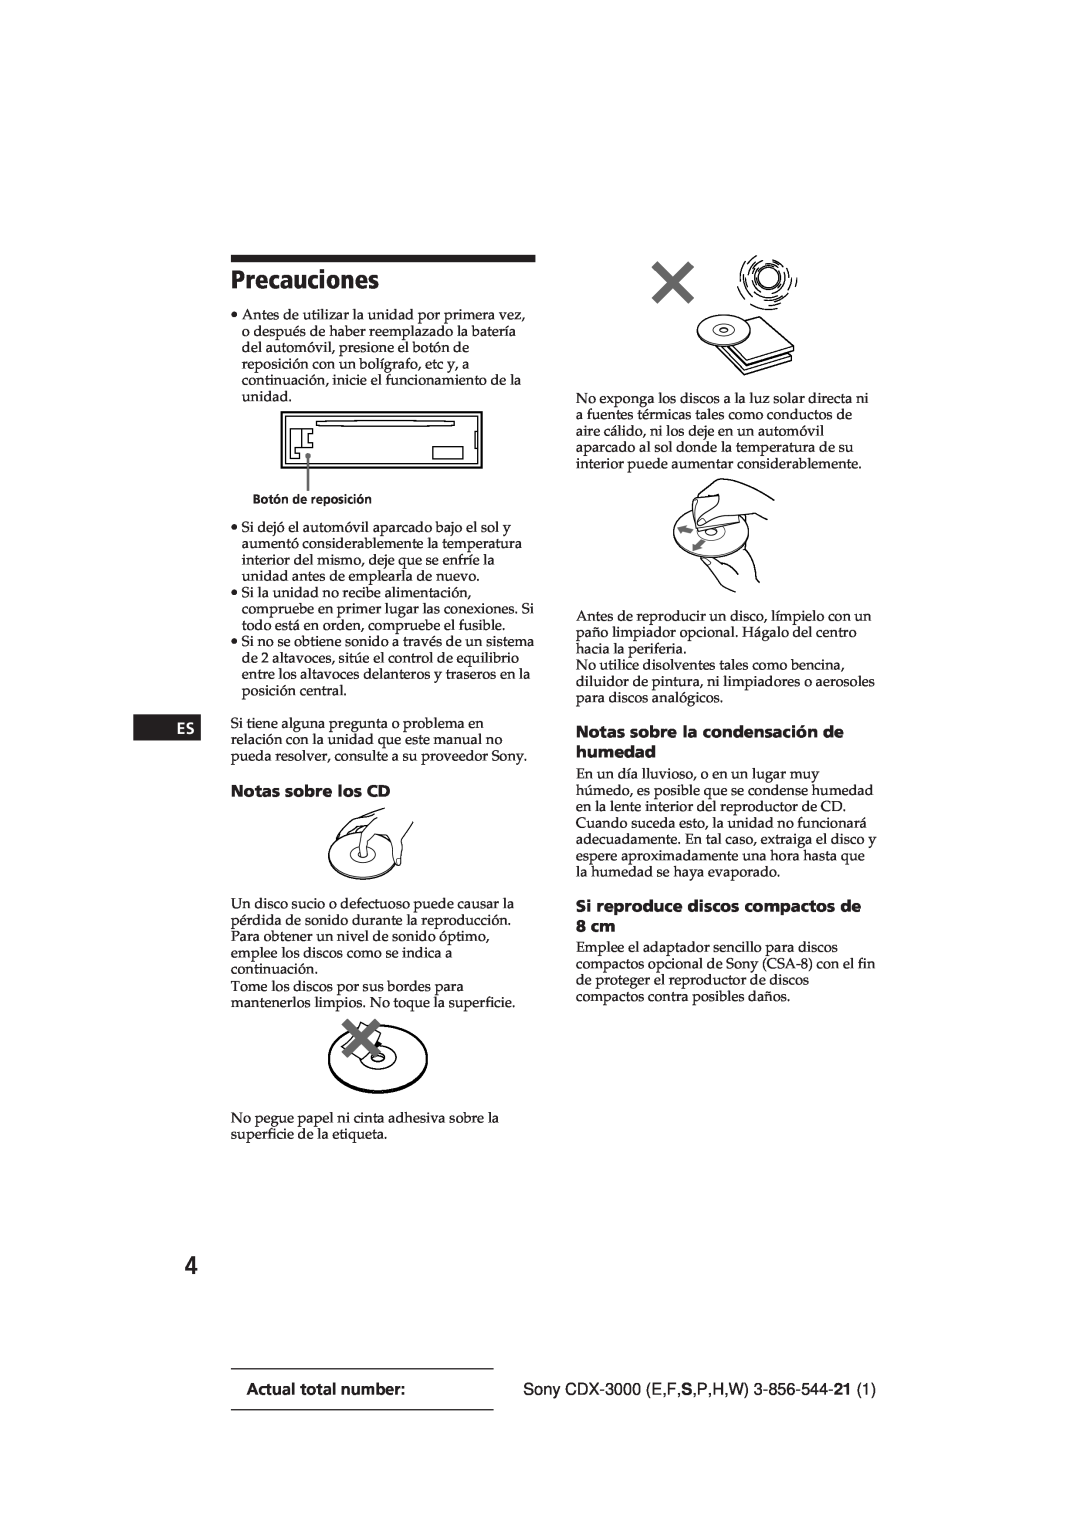 Sony CDX-3000 manual Precauciones, Notas sobre los CD, Notas sobre la condensación de humedad 